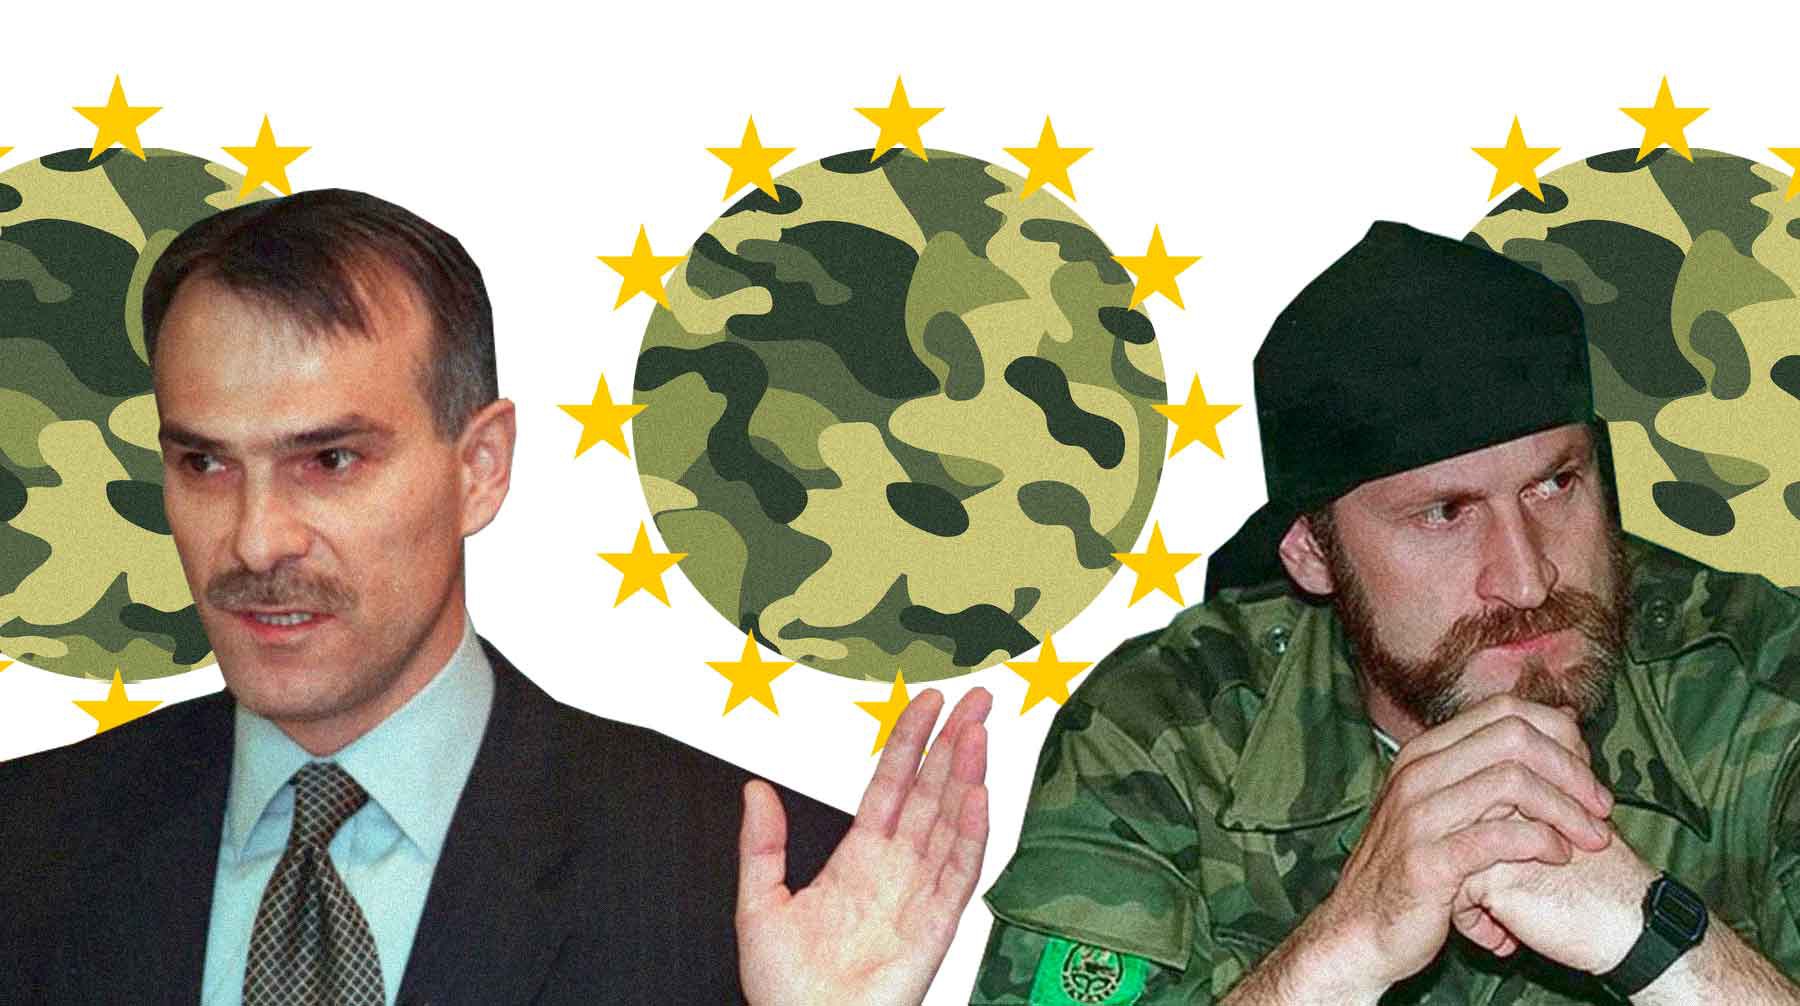 Dailystorm - Террористы в эмиграции: чем занимаются чеченские полевые командиры в Европе и других странах мира